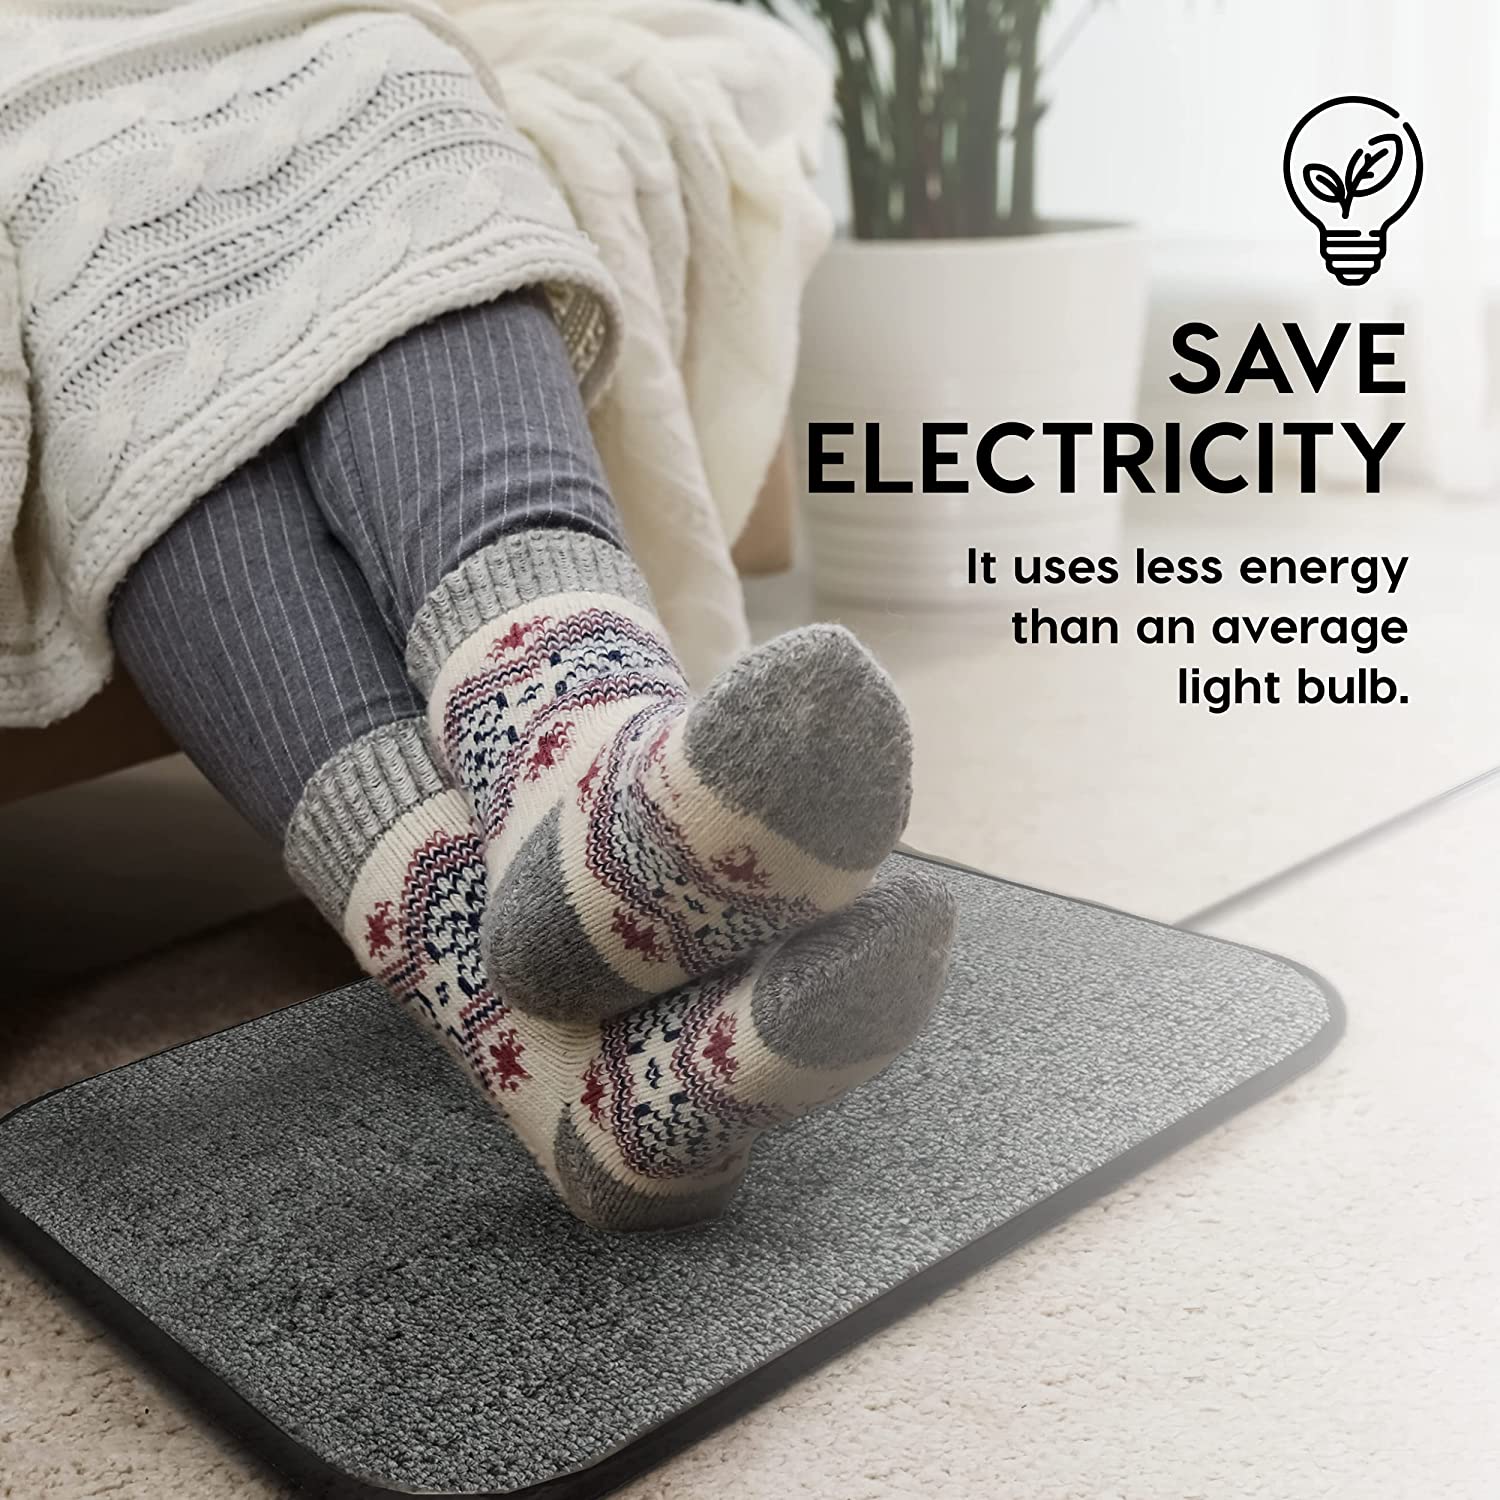 Electric foot warmer, shoe drying mats 